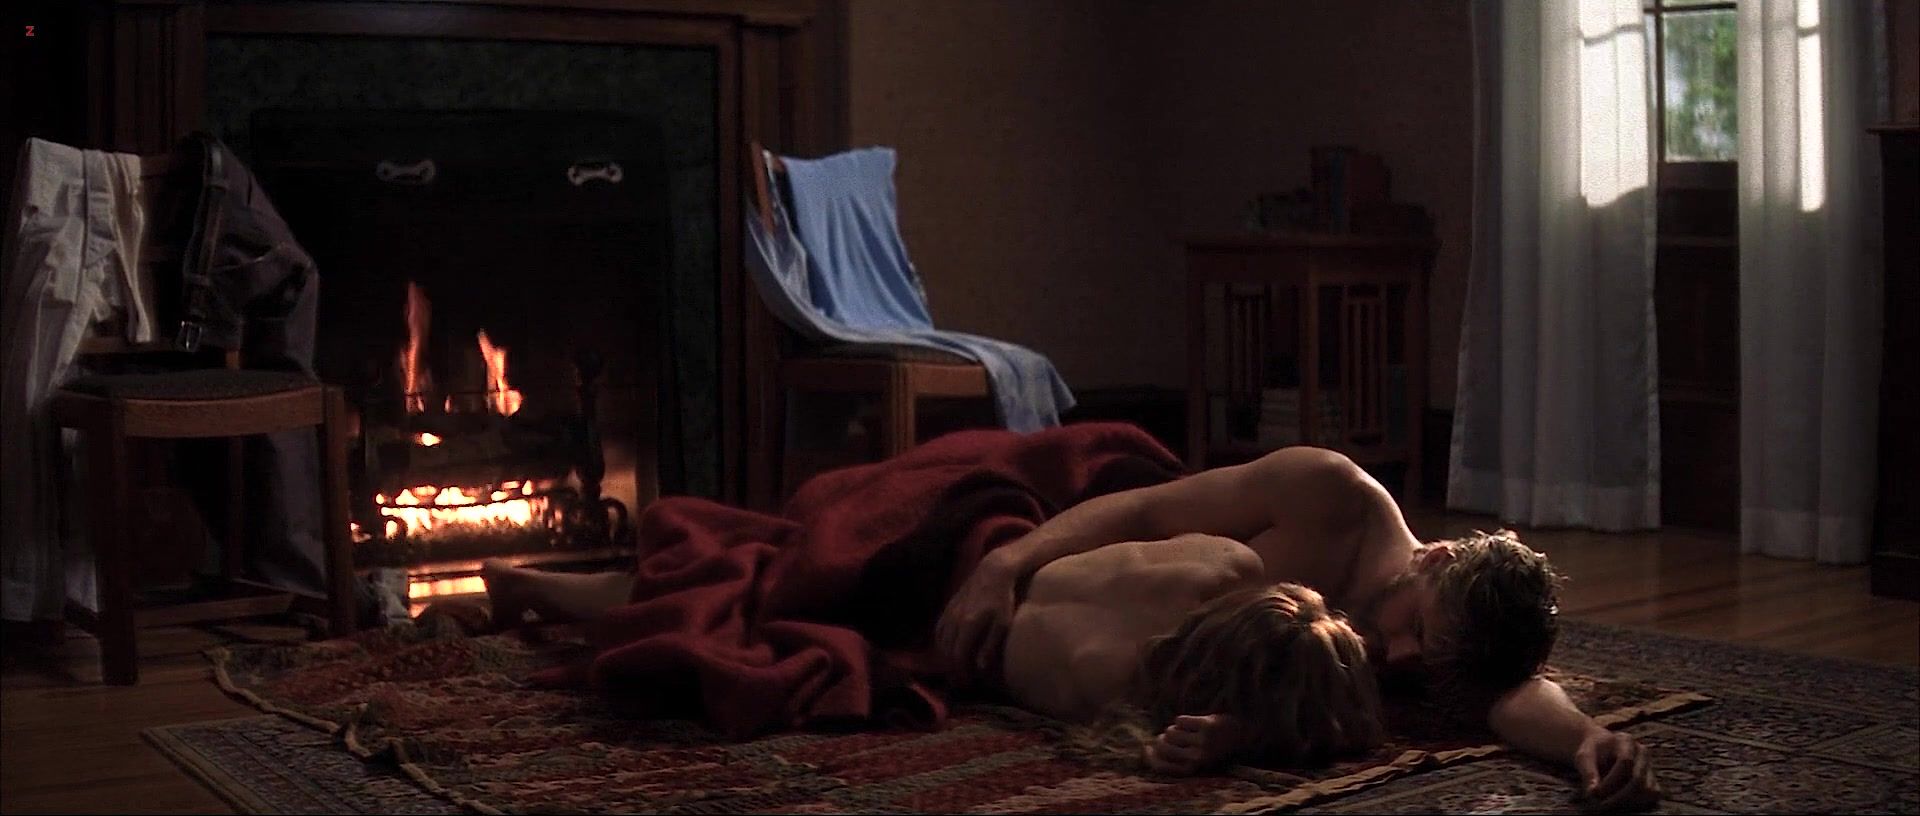 Bedroom Topless actress Rachel McAdams nude - The Notebook (2004) Bigass - 1